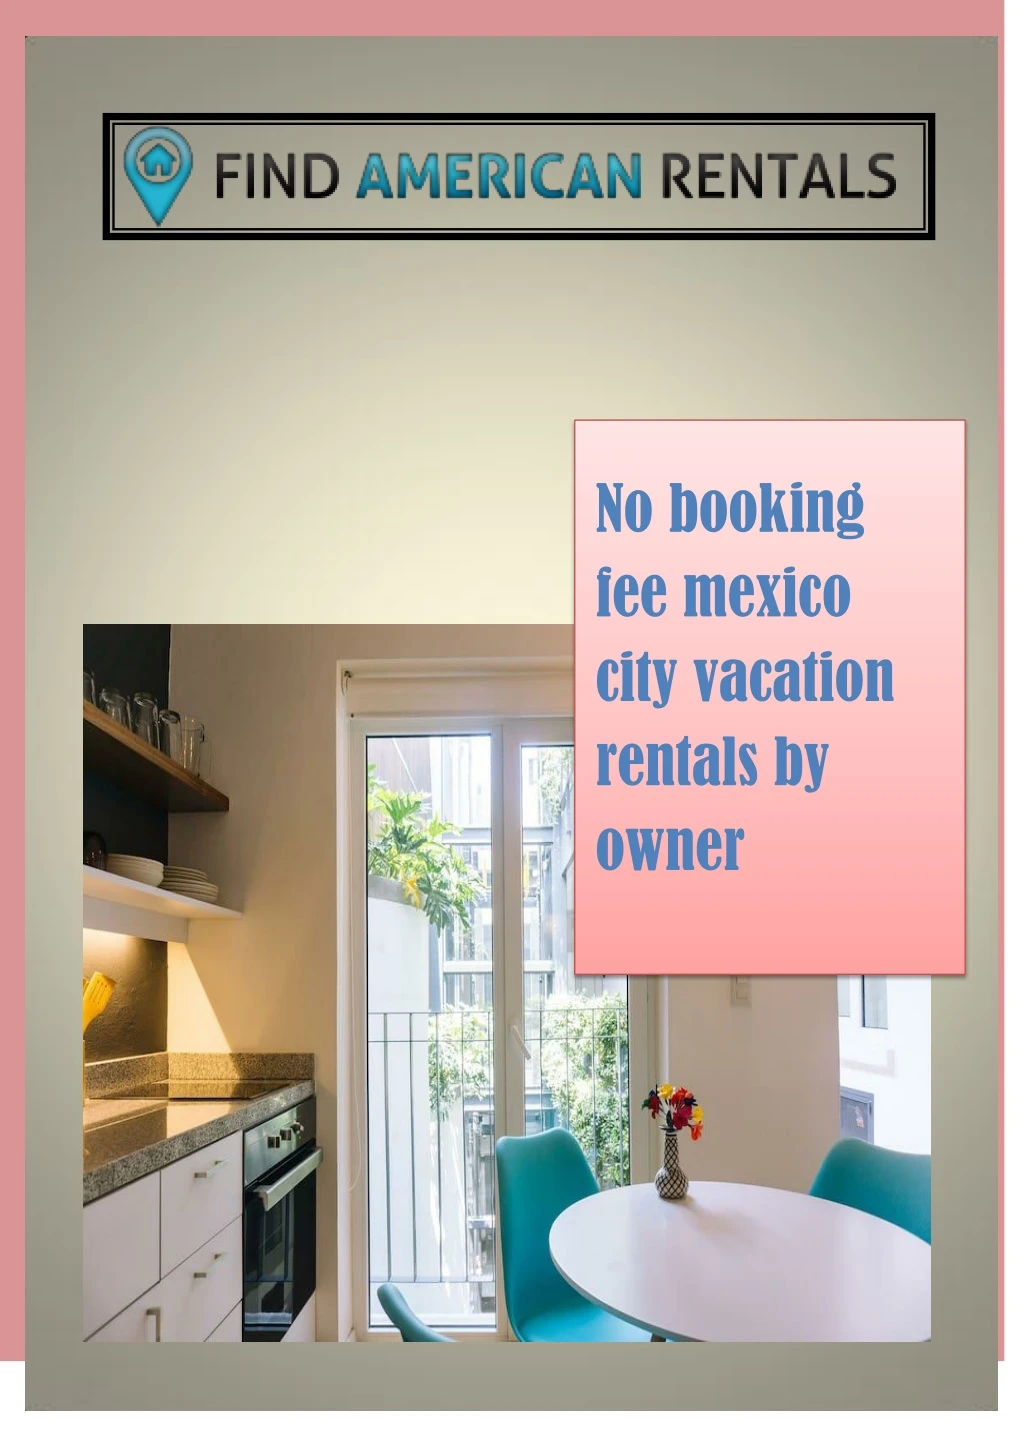 no booking fee mexico city vacation rentals